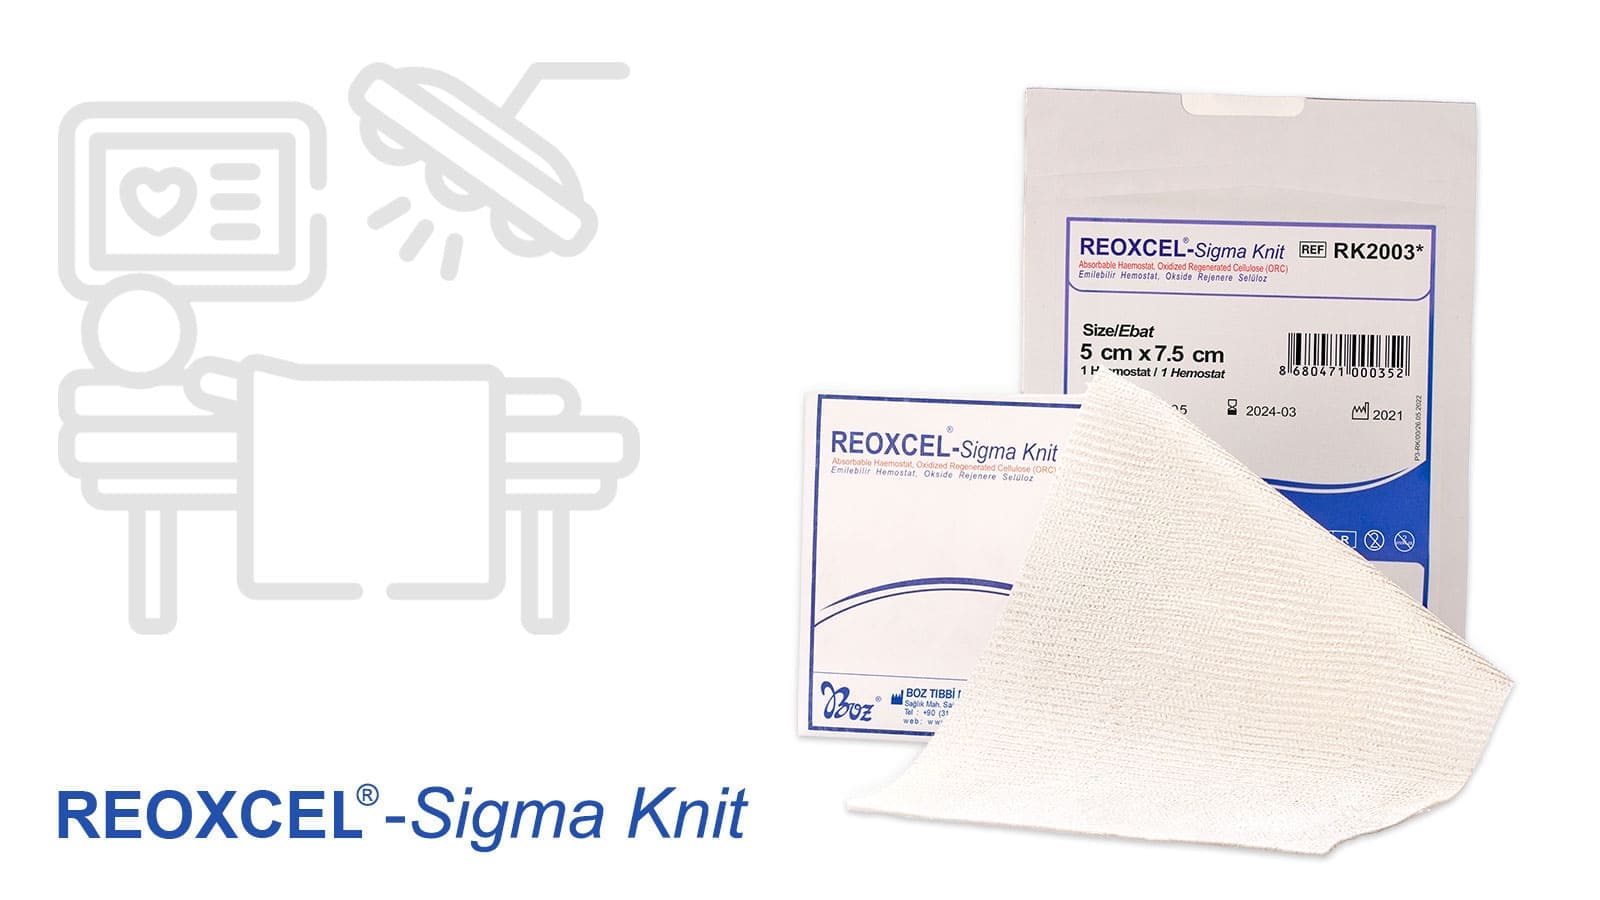 Reoxcel Sigma Knit çok yönlü kullanım kolaylığı sağlayan hemostat.